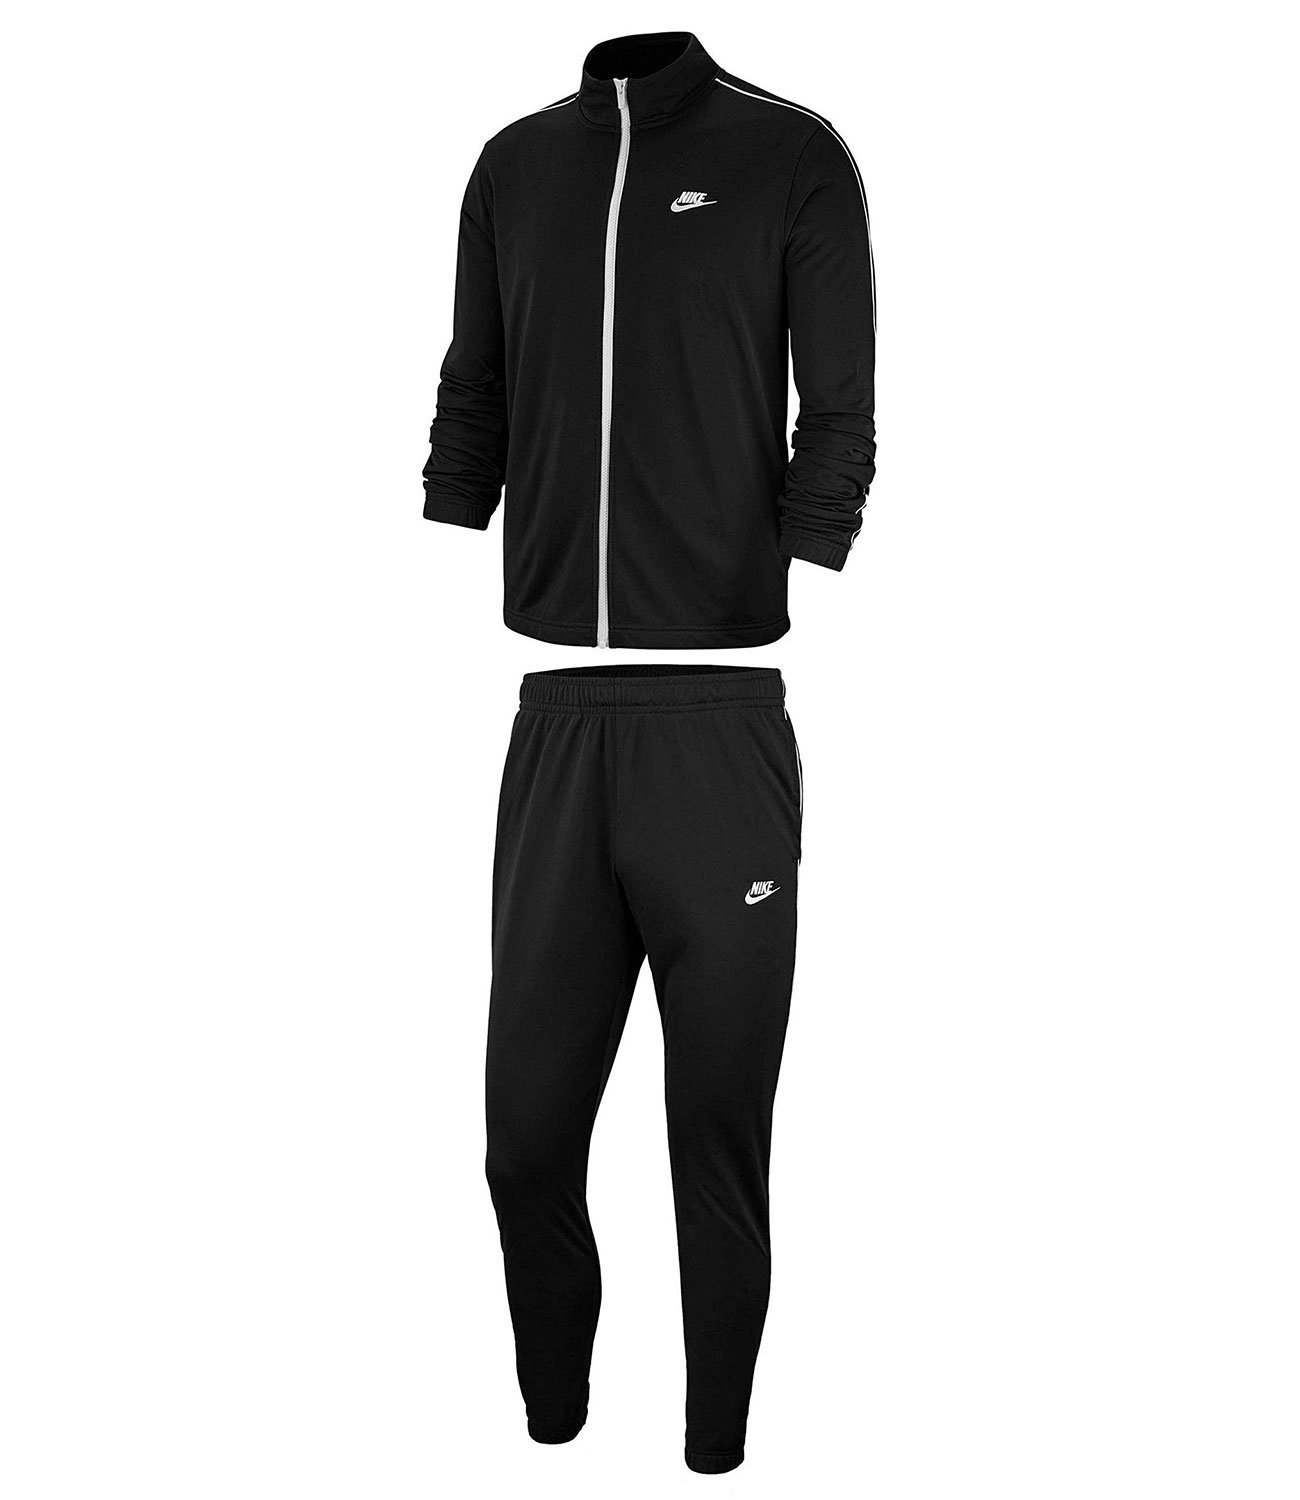 Купить спортивный костюм в нижнем новгороде. Черный спортивный костюм Nike bv3034-010. Nike bv3034-010. Черный спортивный костюм Nike Woven 886511-010. Nike Tracksuit костюм мужской.